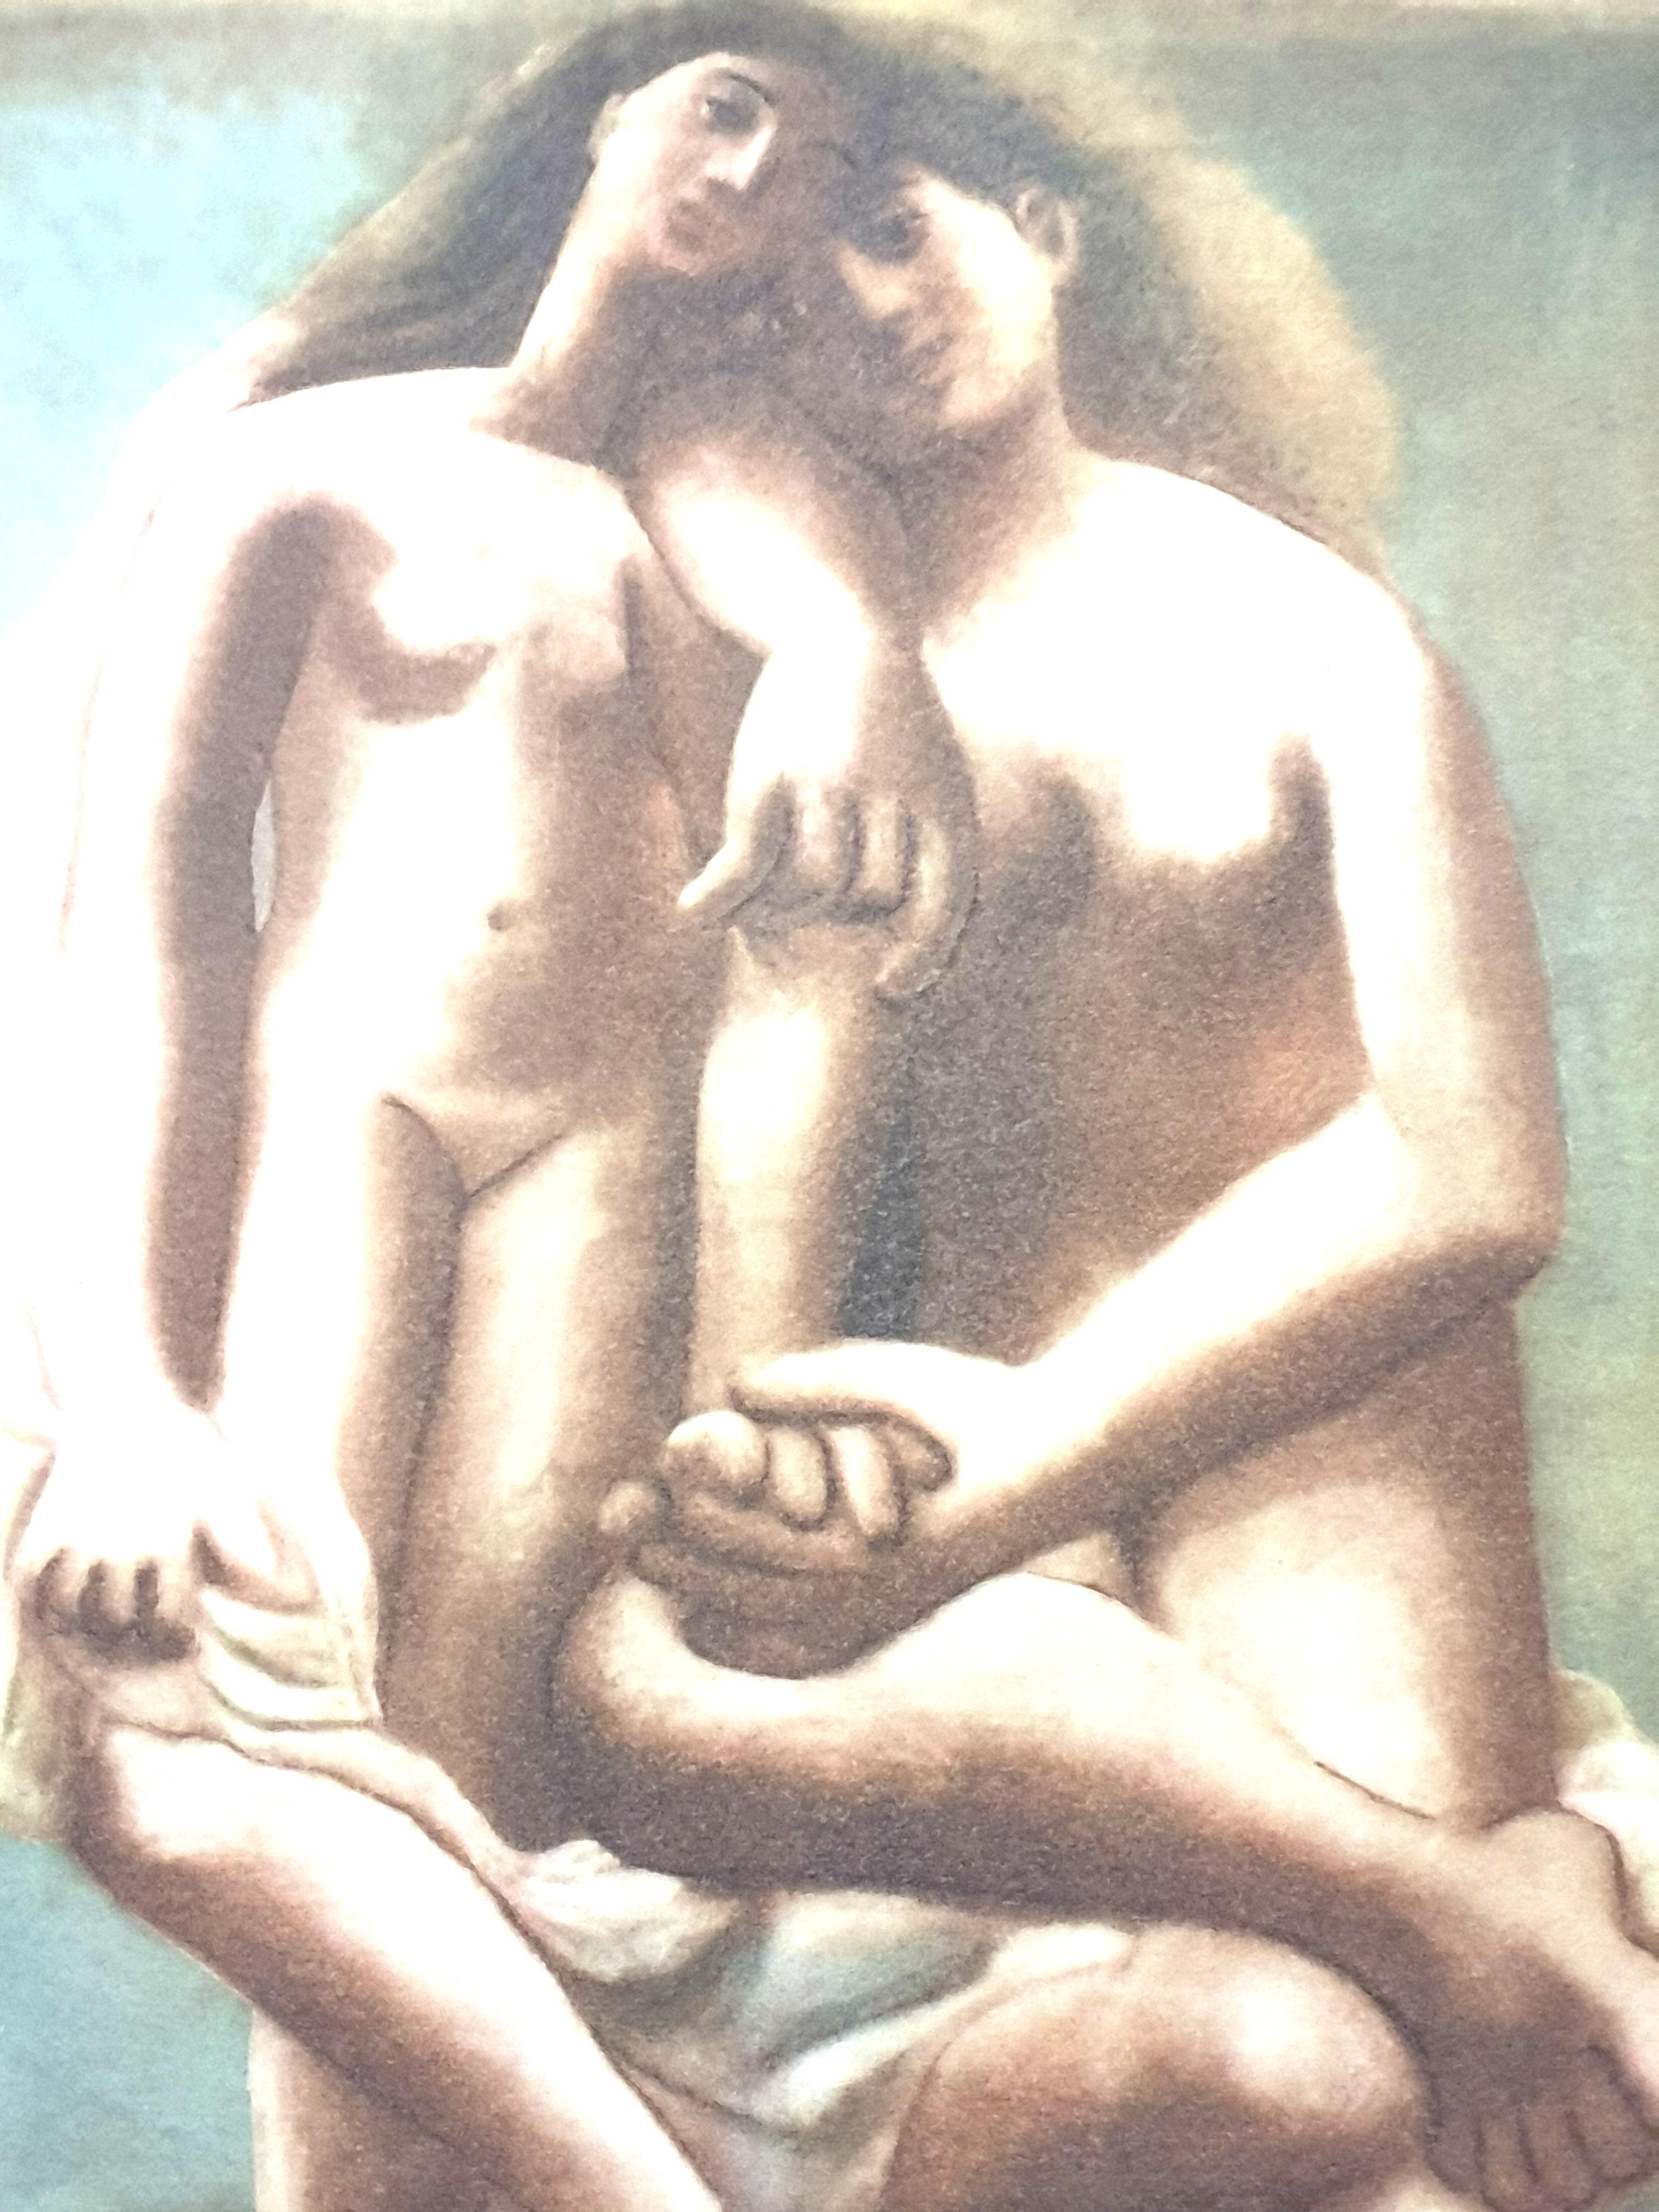 Pablo Picasso (après) - Deux nus - Lithographie
1946
Éditeur : Albert Carman
Dimensions : 48 x 33 cm 
Des cinq dessins de Picasso